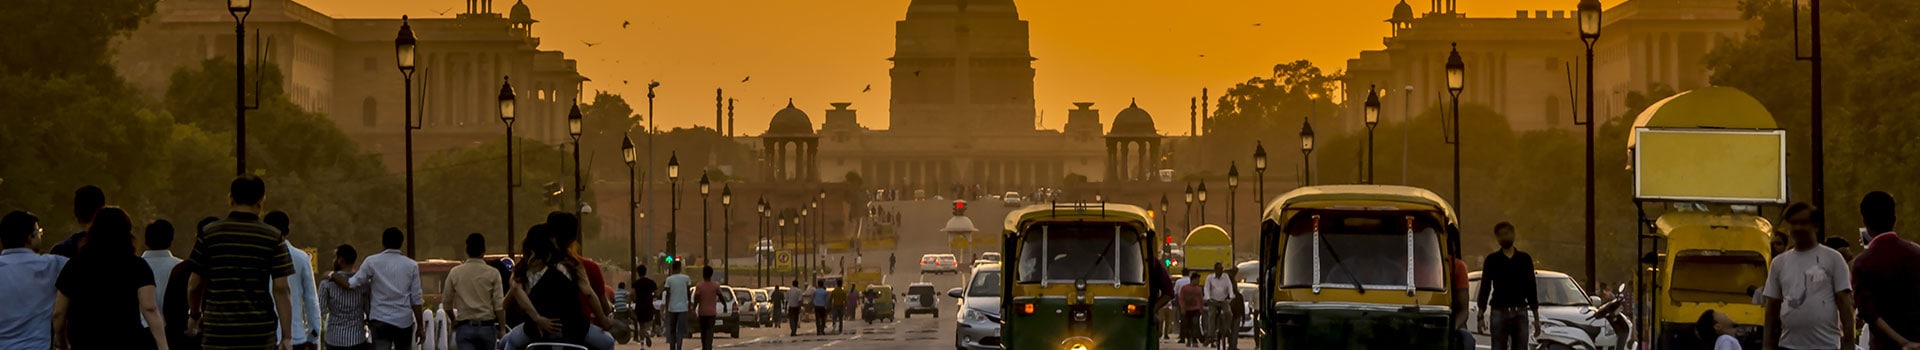 Bangalore - Delhi